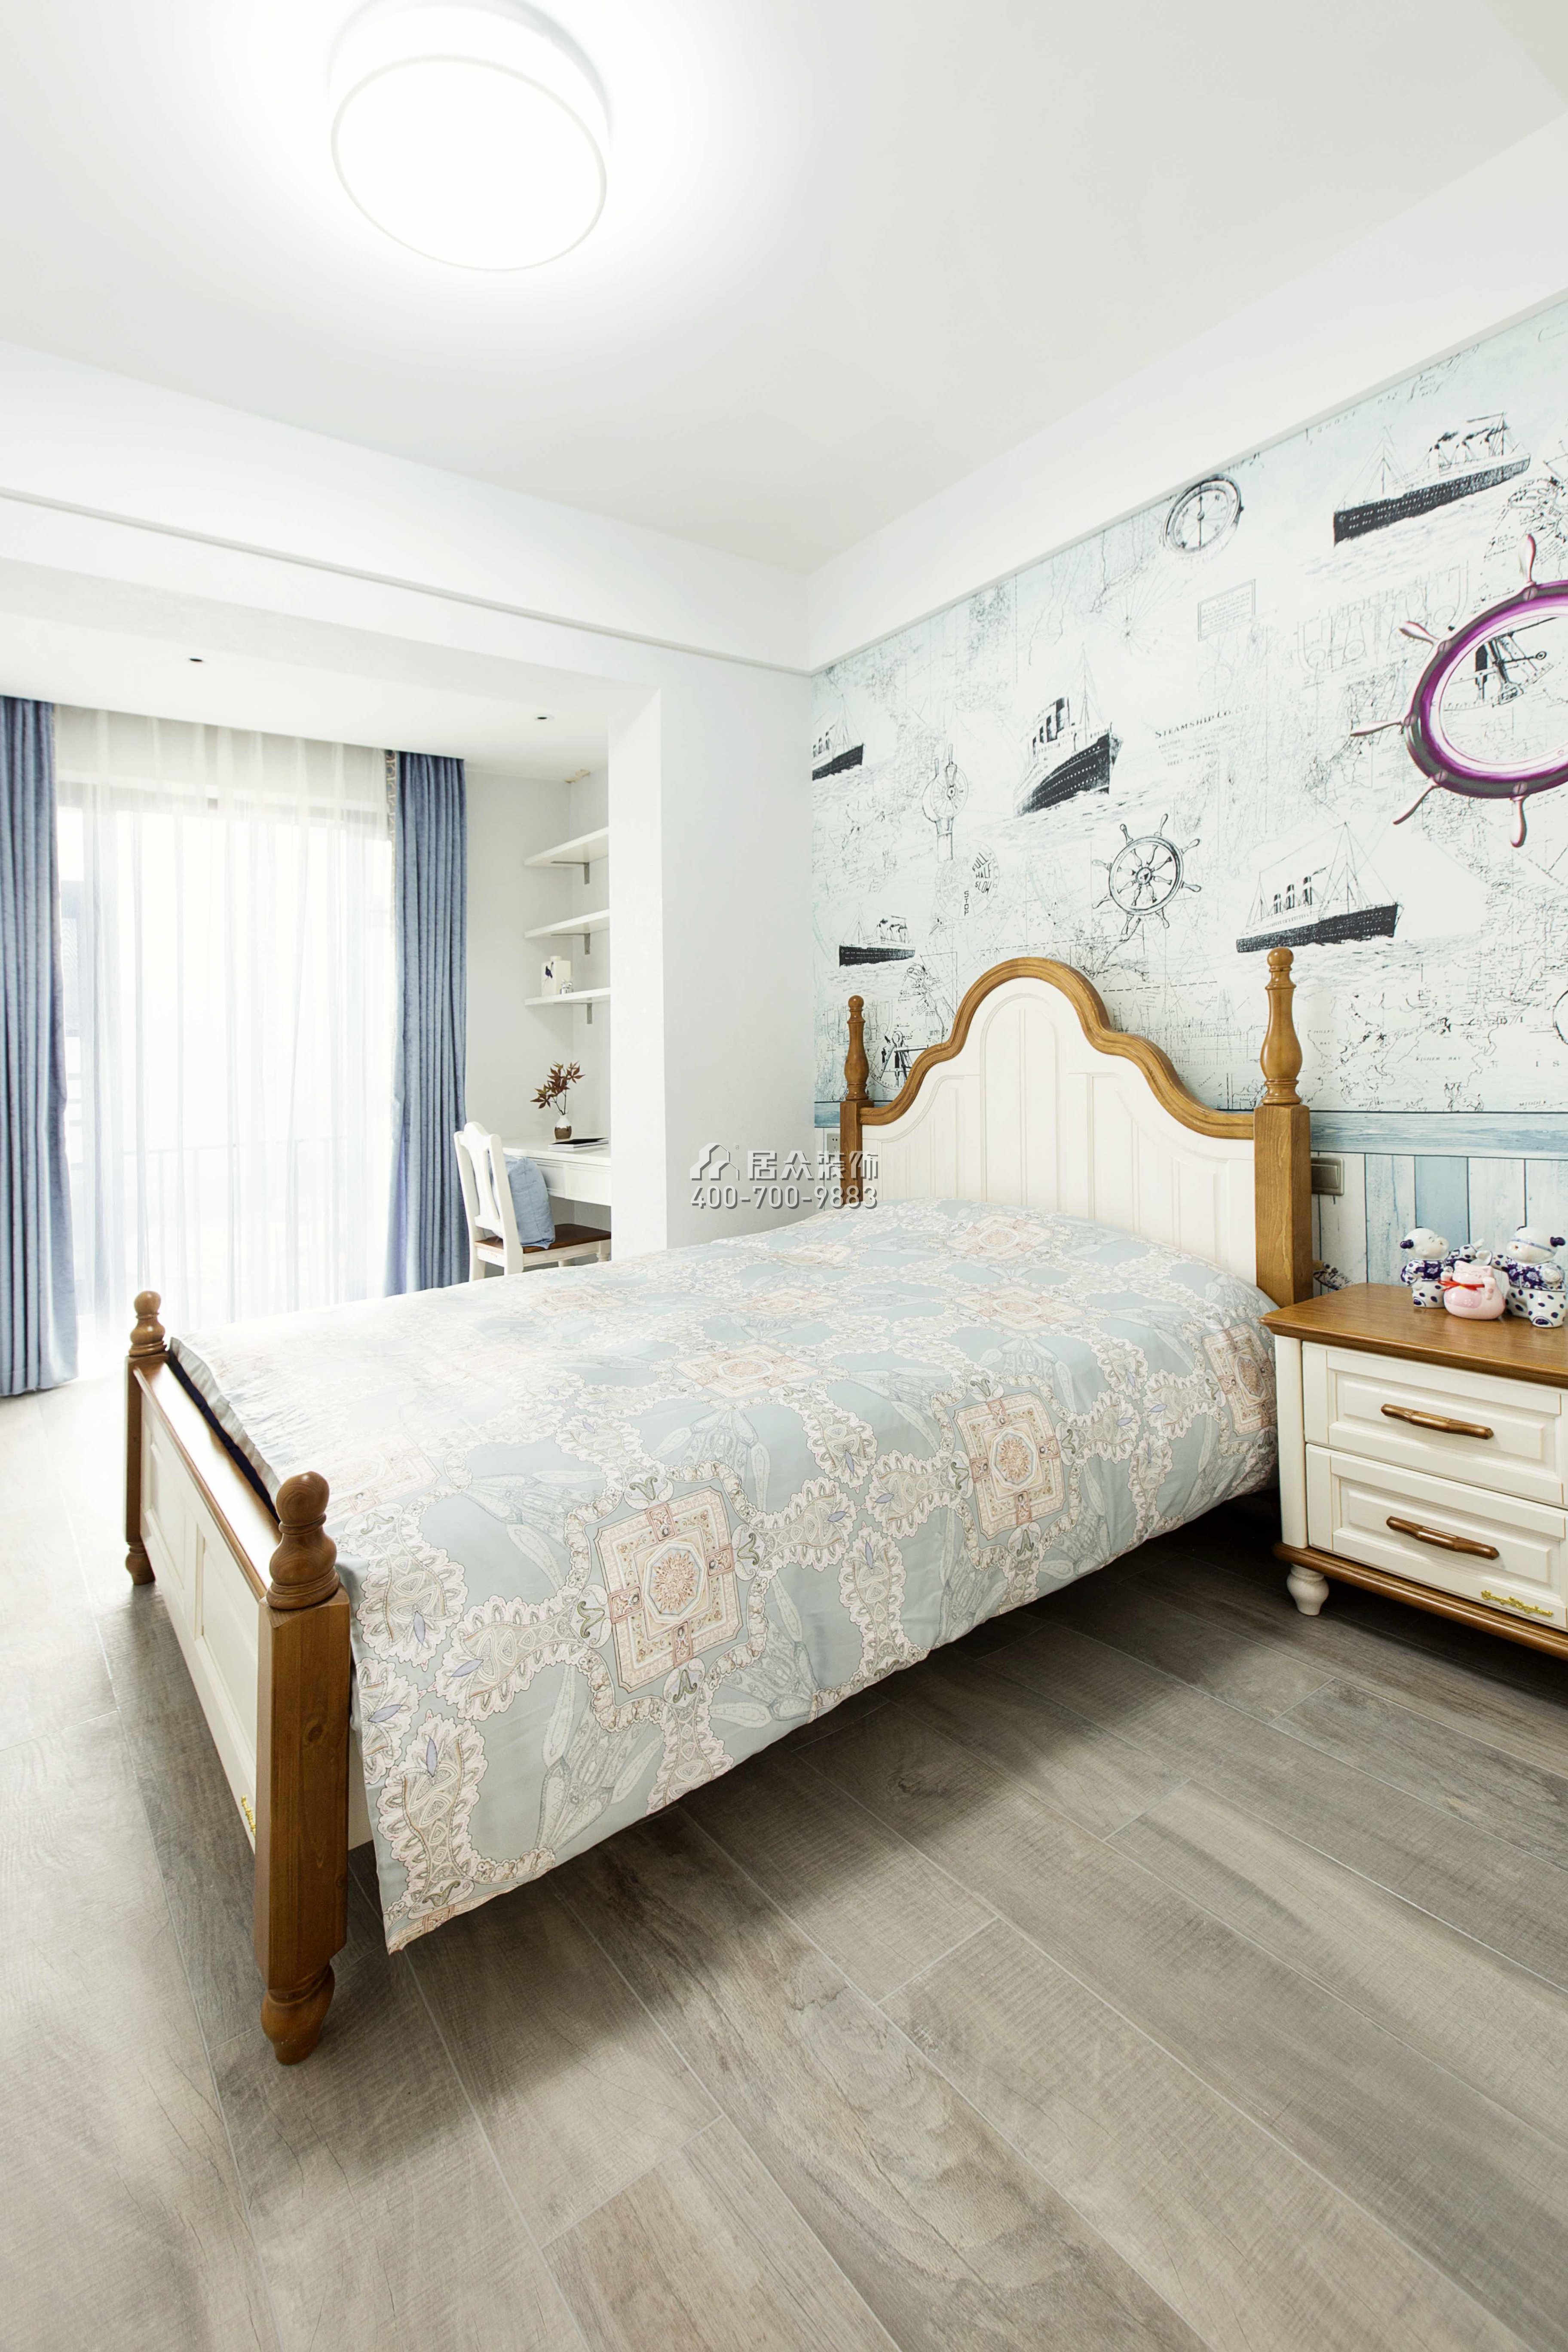 承翰陶柏莉140平方米中式风格平层户型卧室装修效果图